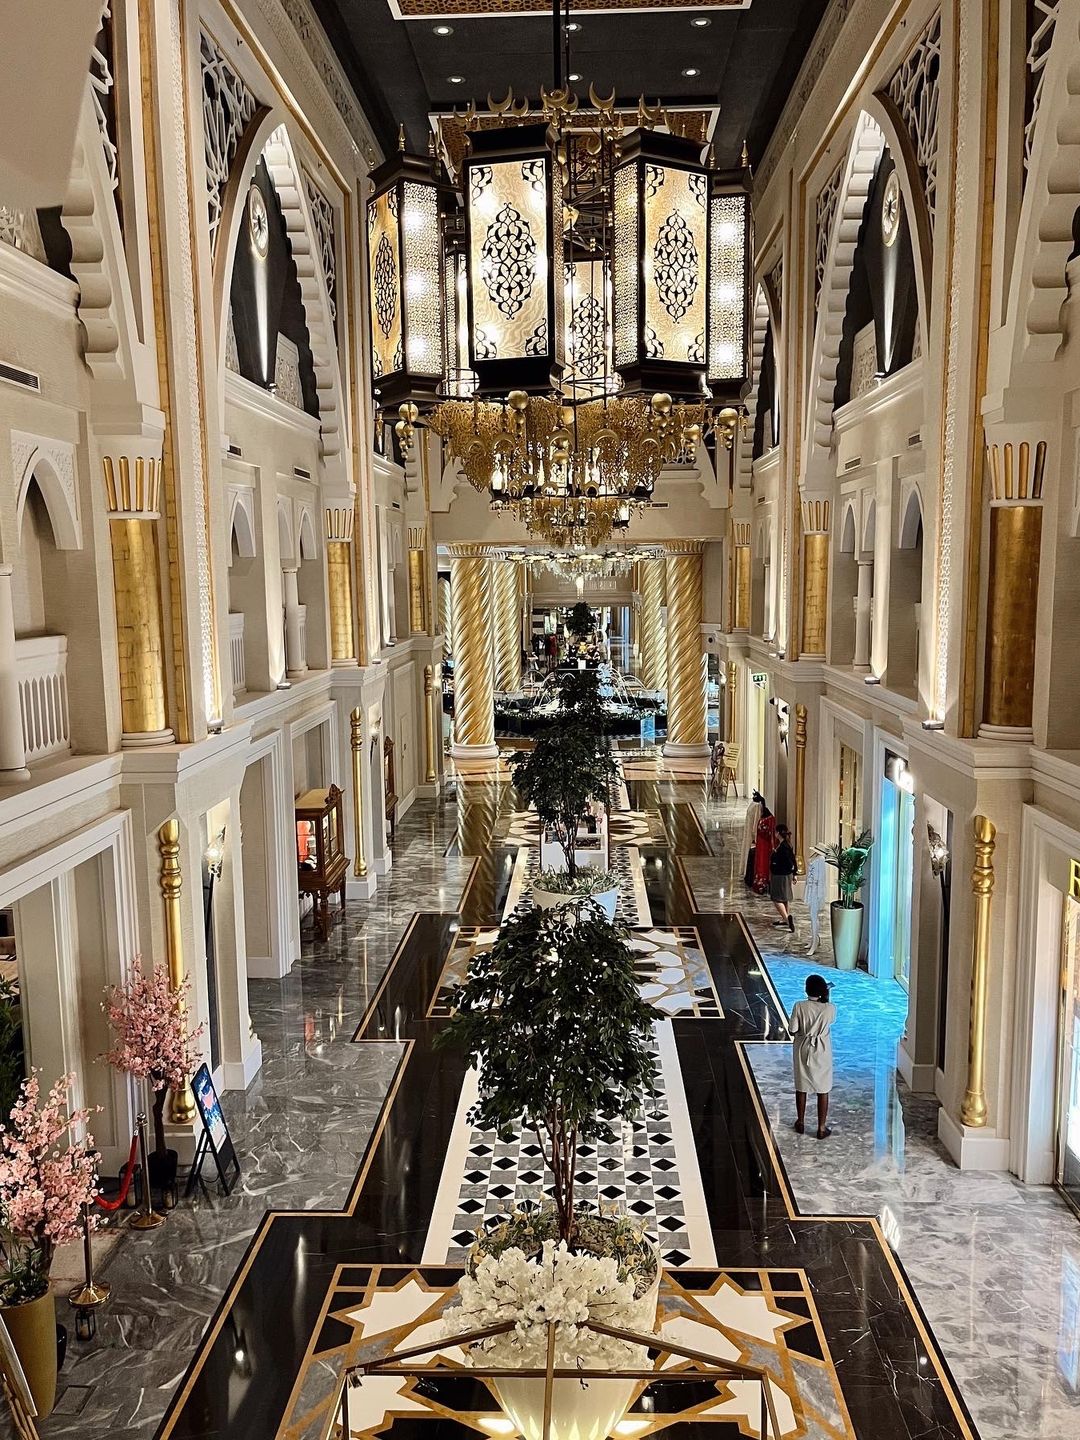 The majestic Jumeirah Zabeel Saray hotel lobby